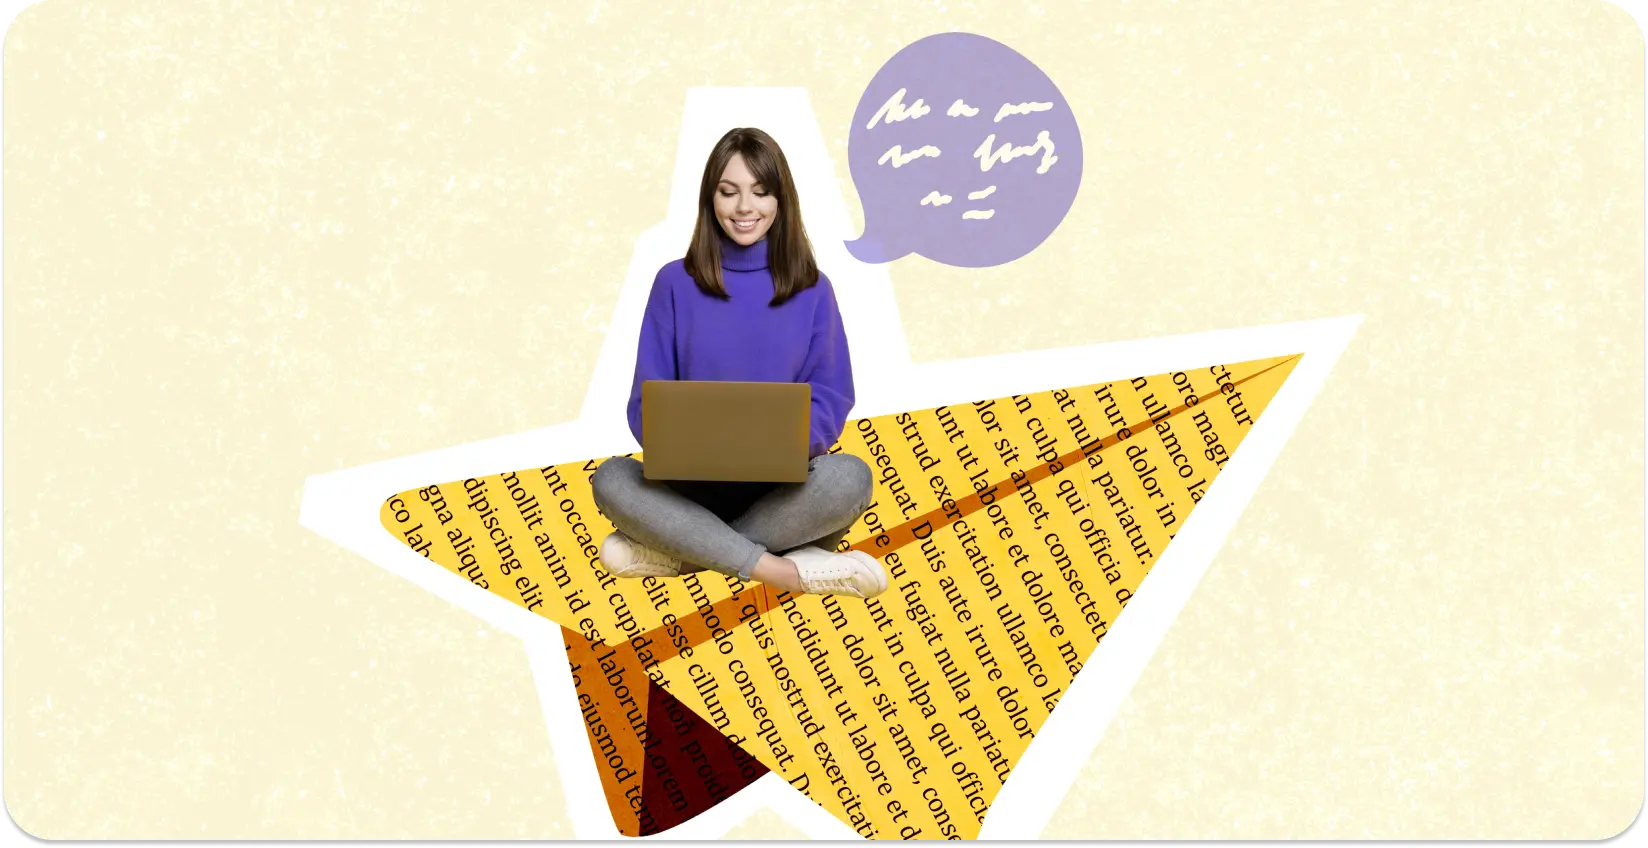 Seorang penulis duduk di kolaj berbentuk bintang halaman yang dipenuhi teks dengan komputer riba.